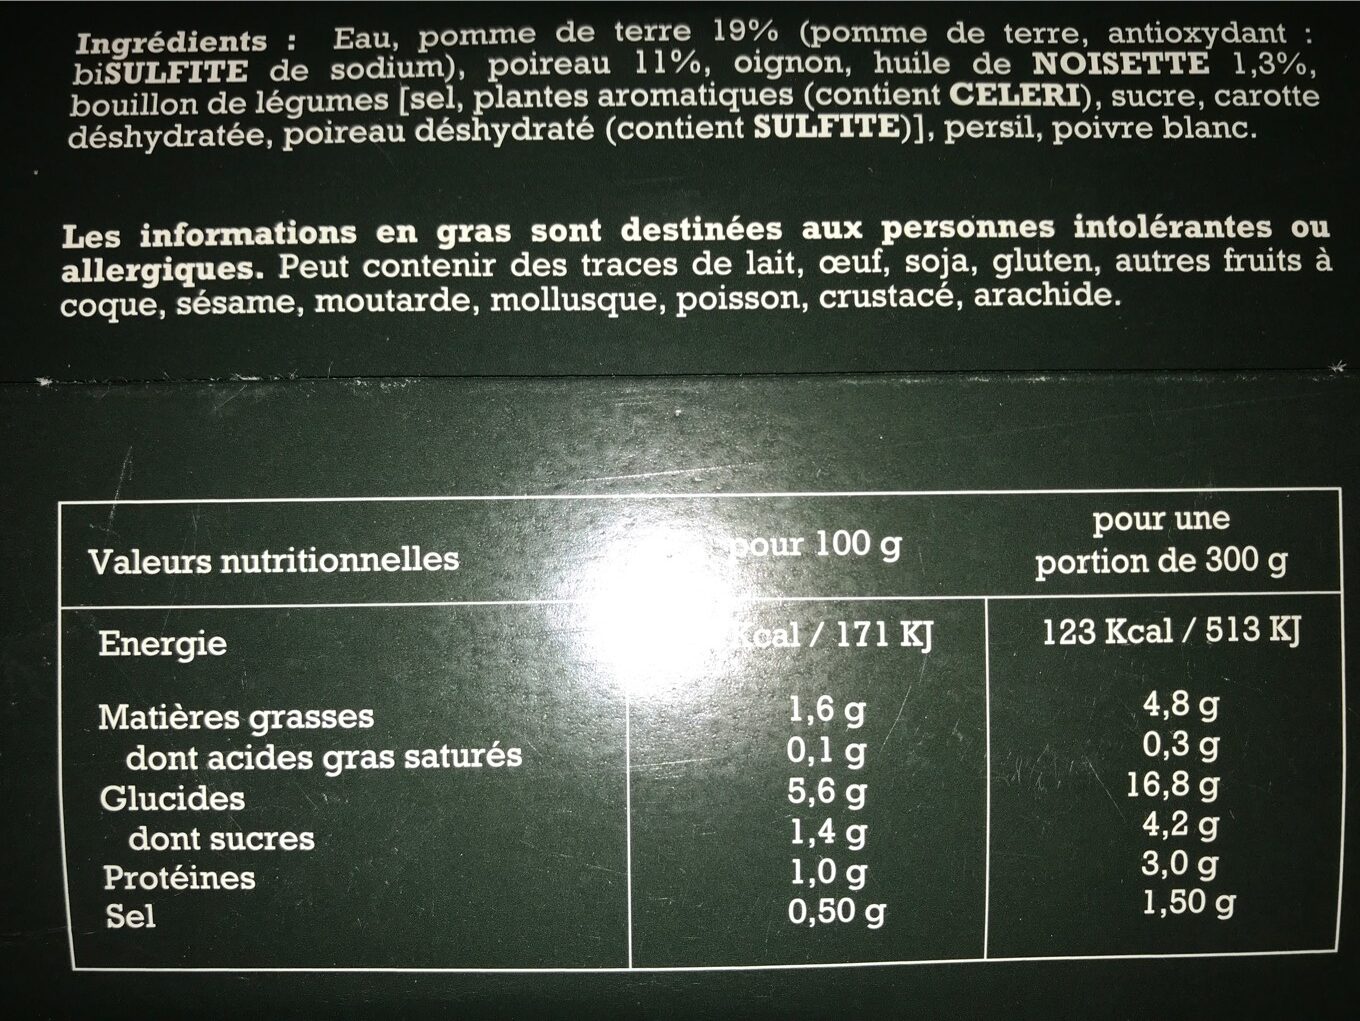 Soupe poireau, pomme de terre, & huile de noisette - Nutrition facts - fr